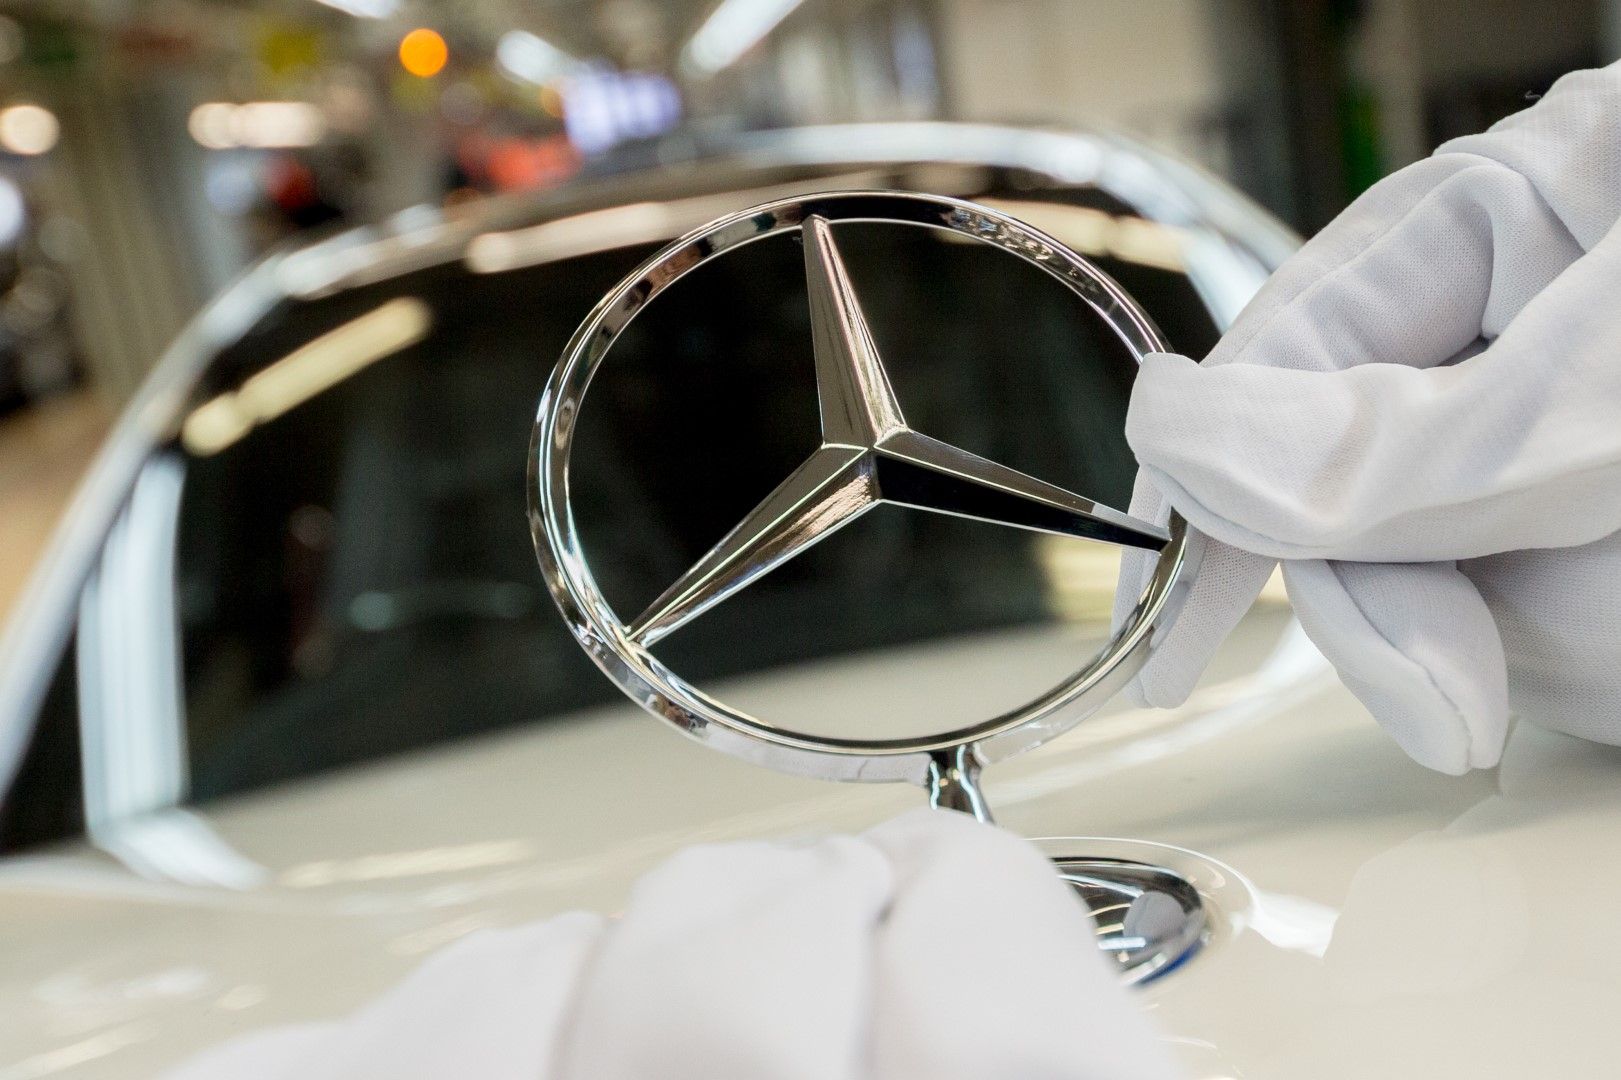 През първите седем месеца на годината обаче продажбите на едро на леки автомобили Мерцедес (Mercedes) са спаднали с 16,2 процента спрямо същия период на 2019 година